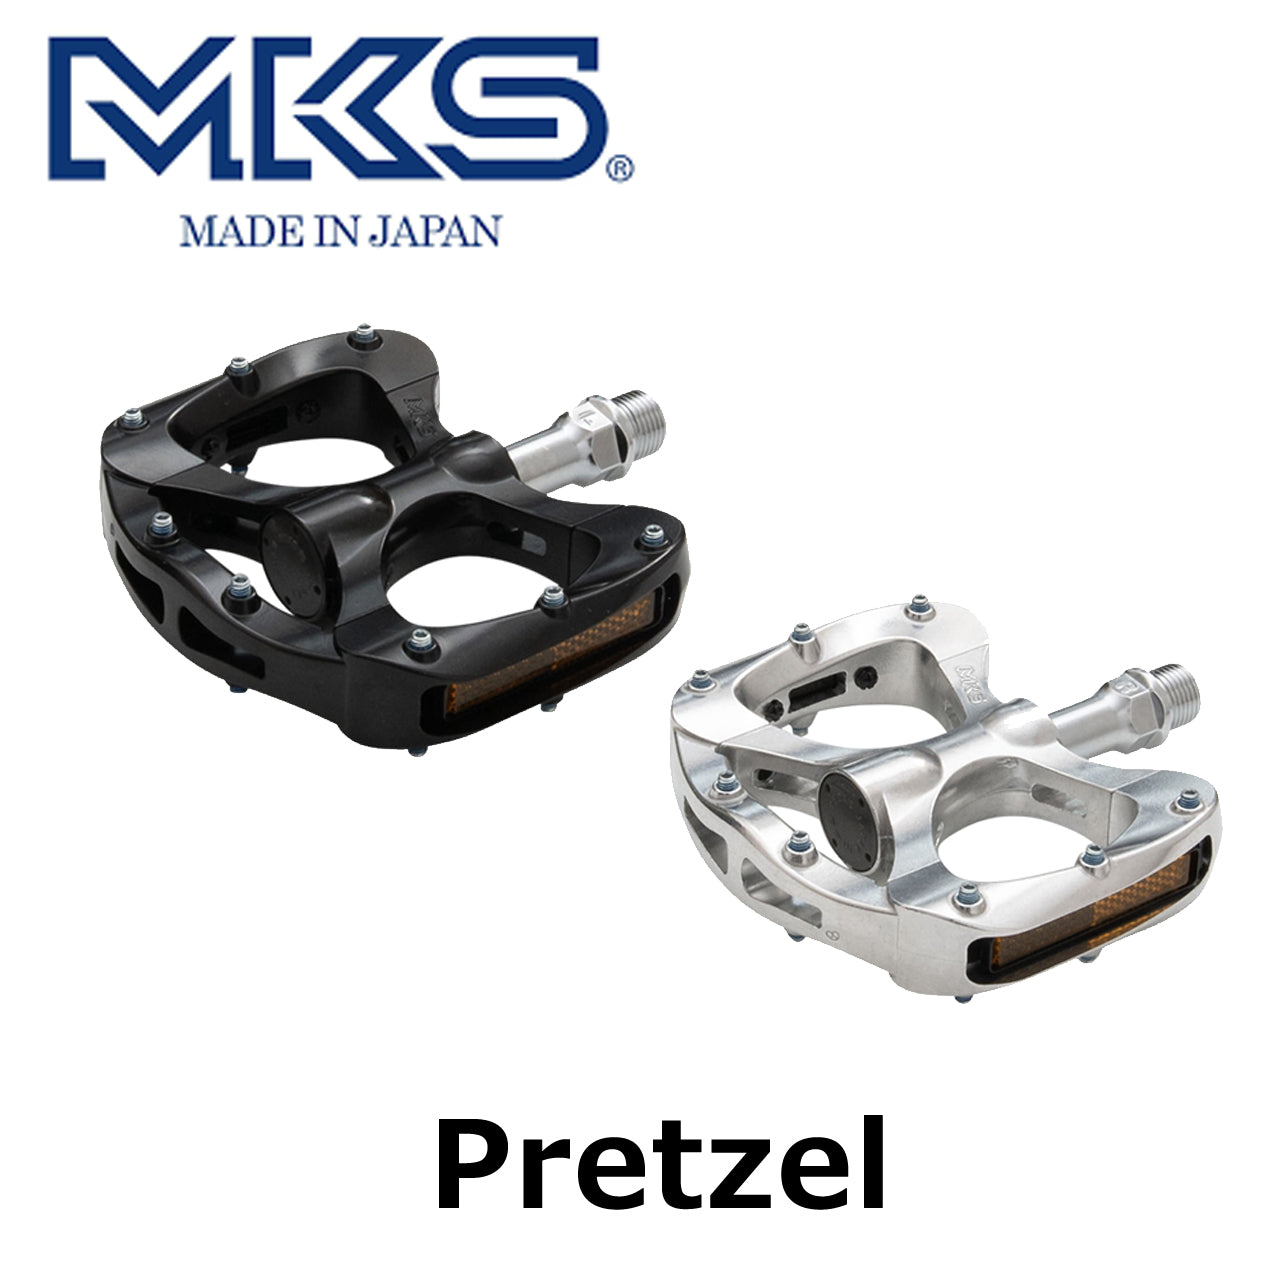 files/oty-mks-pretzel_1.jpg